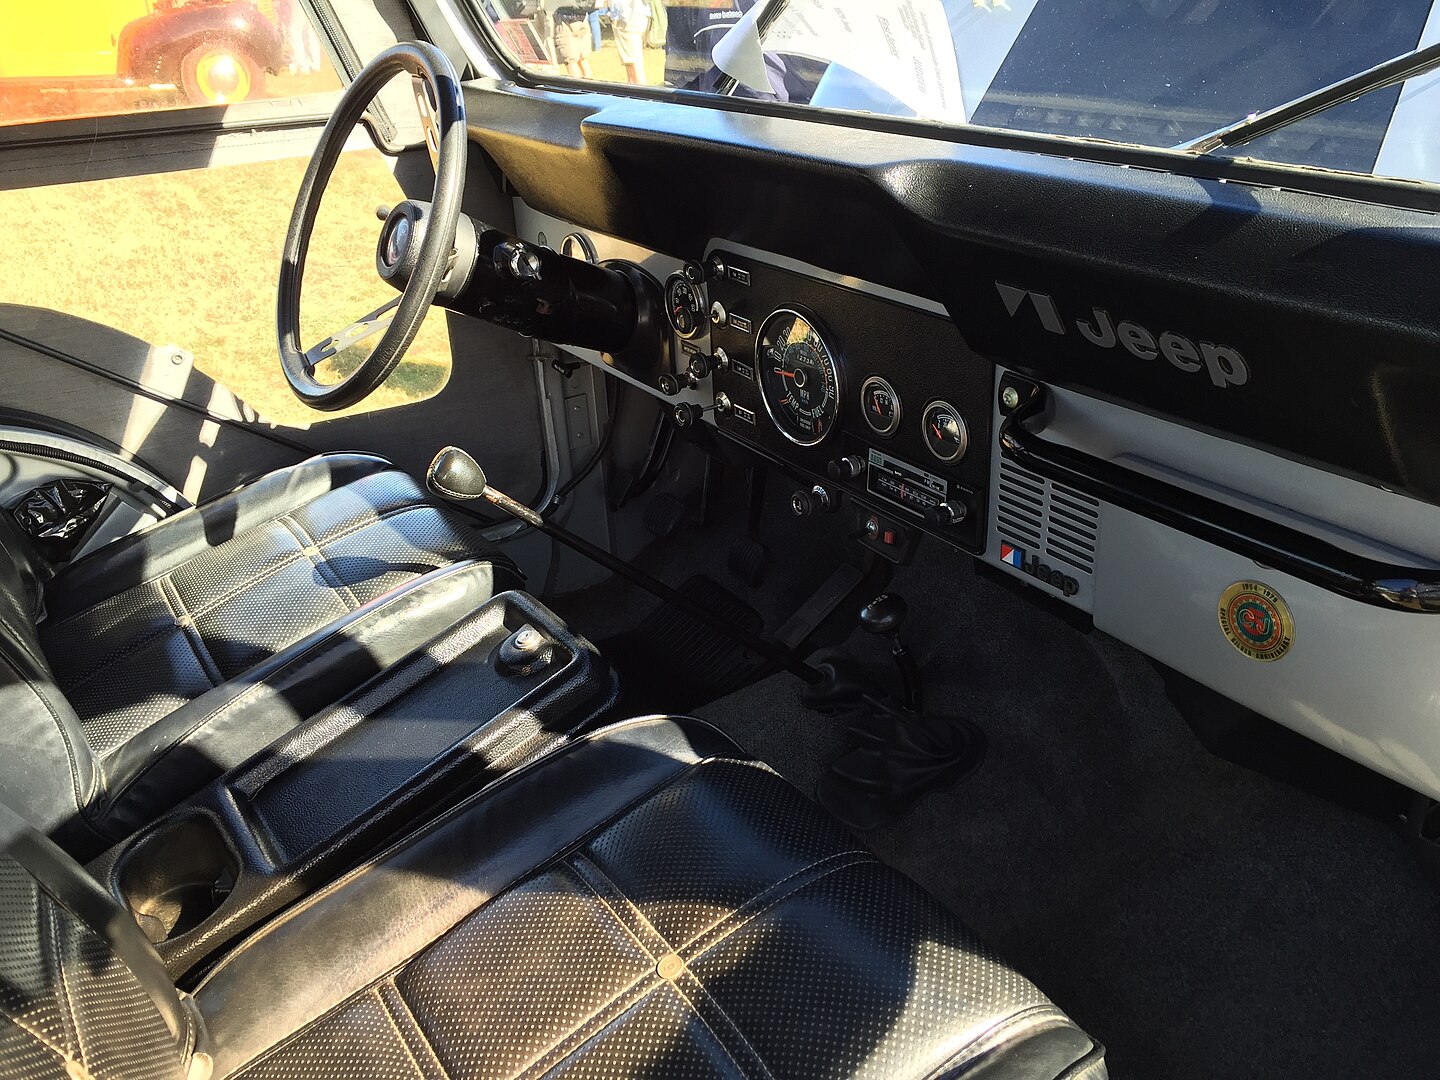 1979 Jeep CJ-5 interior